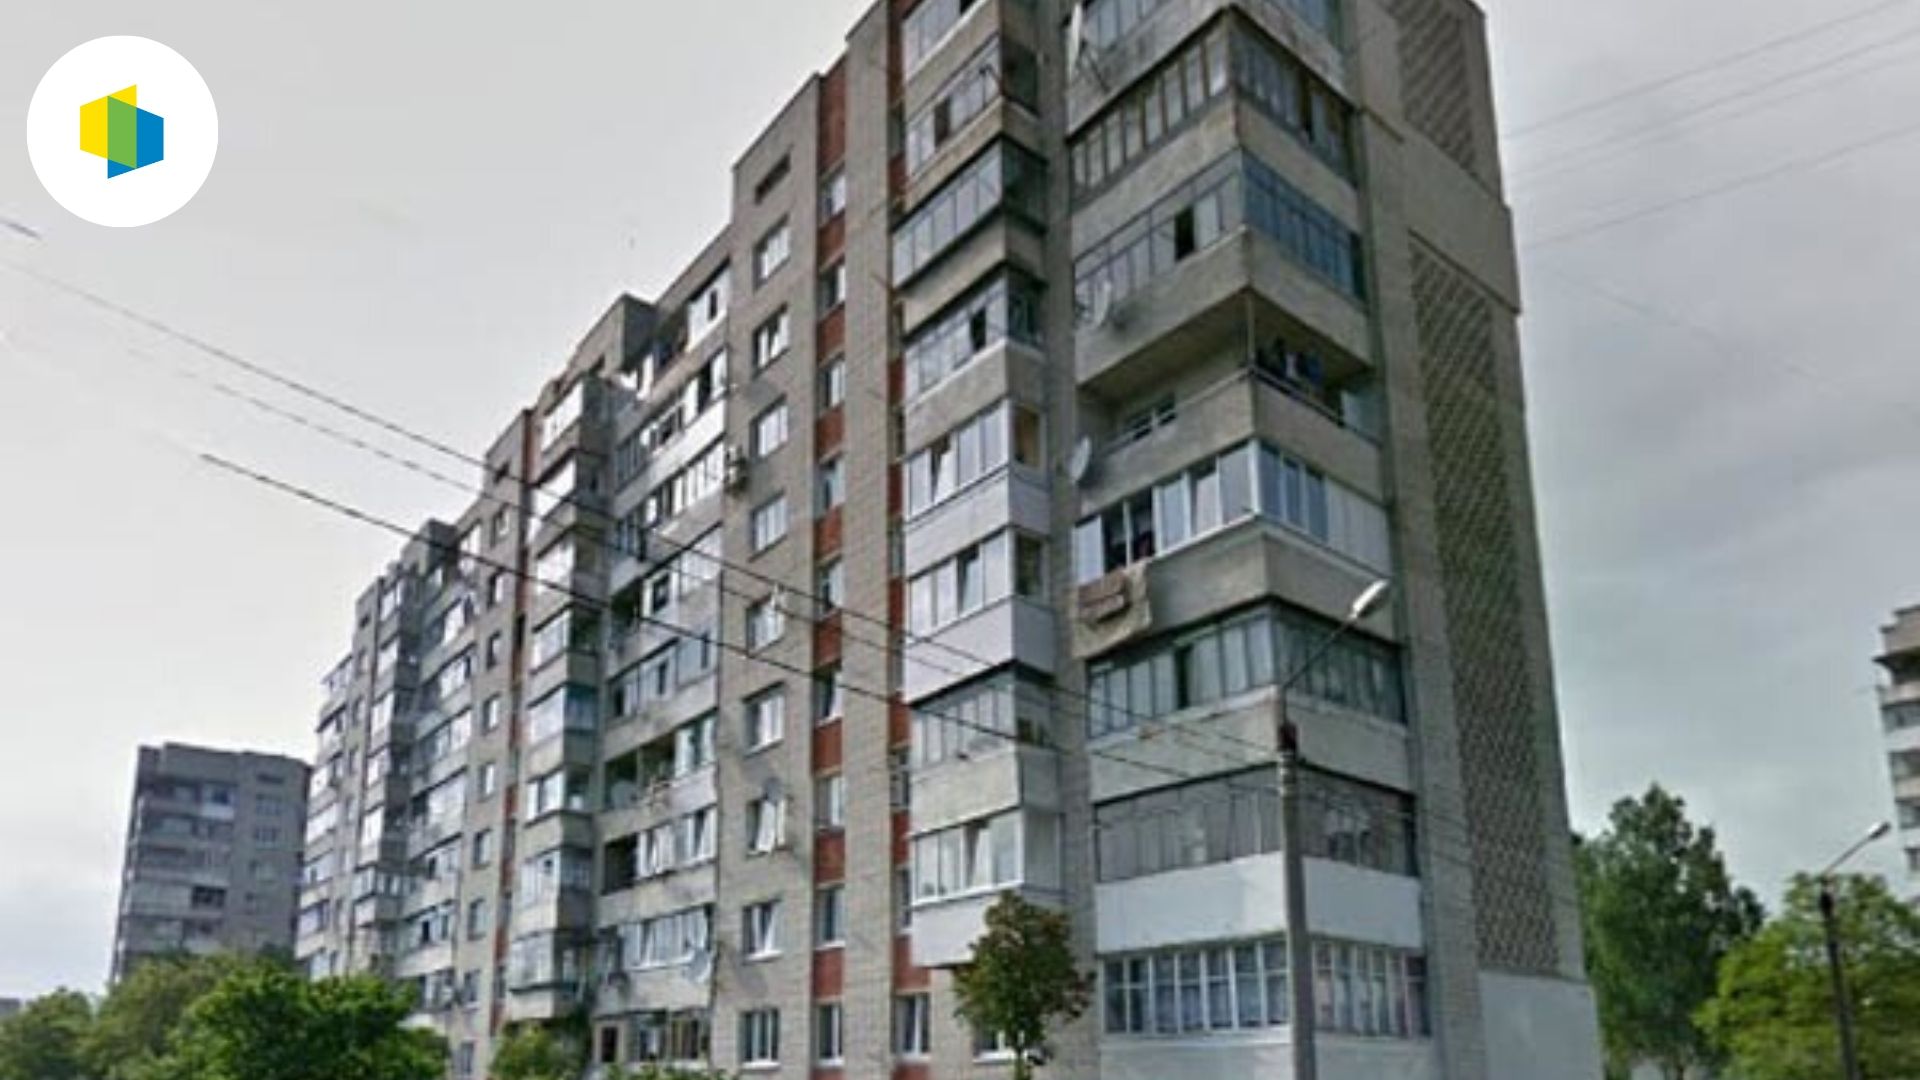 Львівське ОСББ отримало грант на енергомодернізацію будинку за умовами проекту “Перші ластівки”